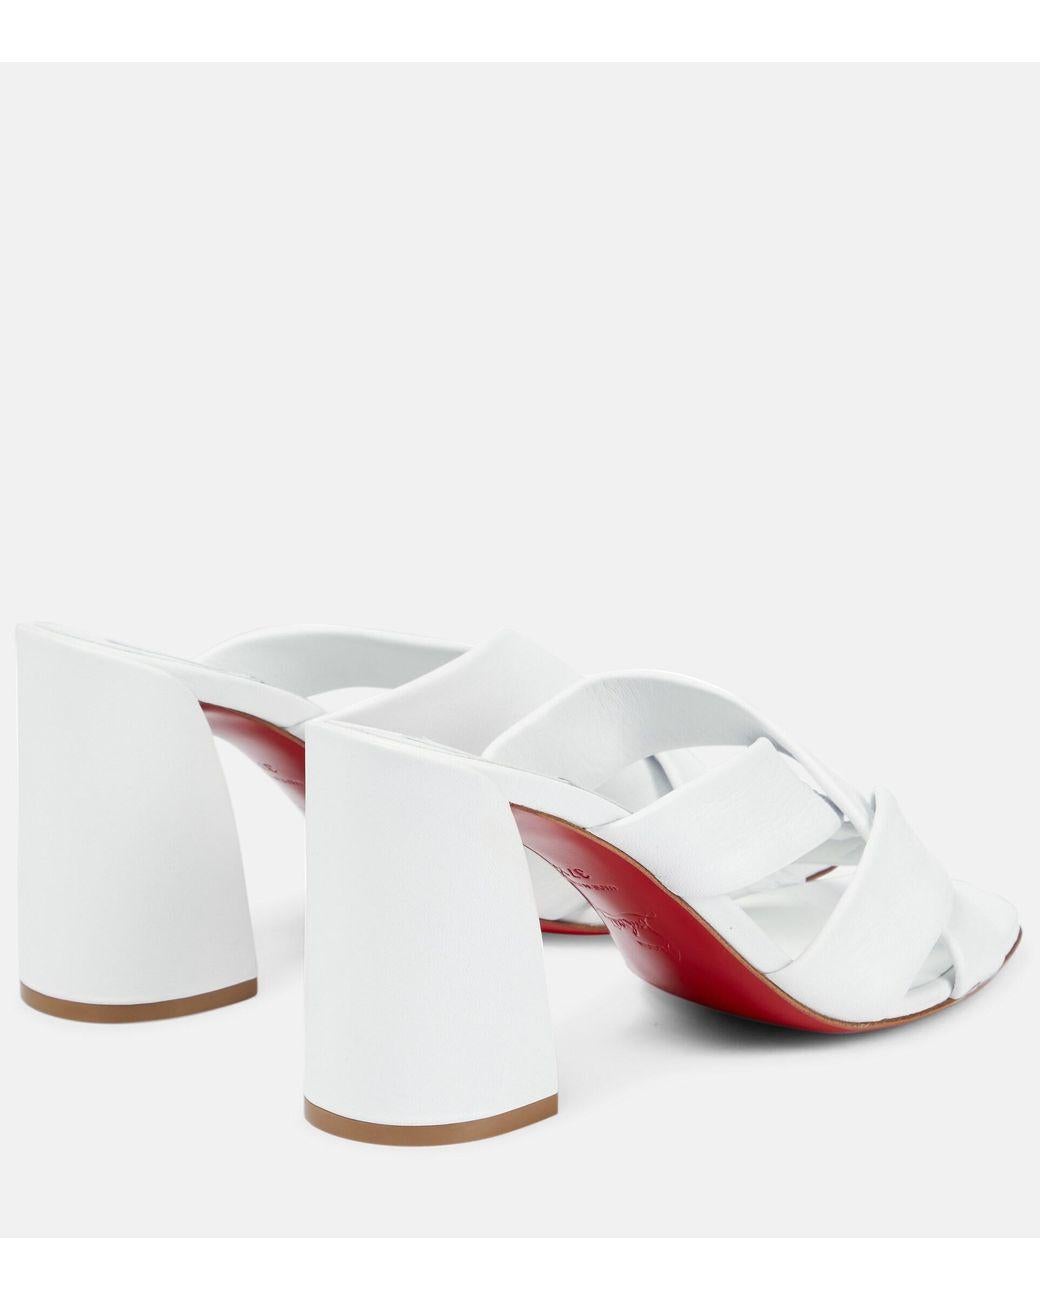 Les mules 'Silhouette' de Christian Louboutin sont confectionnées en cuir et présentent une silhouette à bout rond fixée par des doubles brides. Le talon de 85 mm offre un éclat du rouge emblématique du Label.